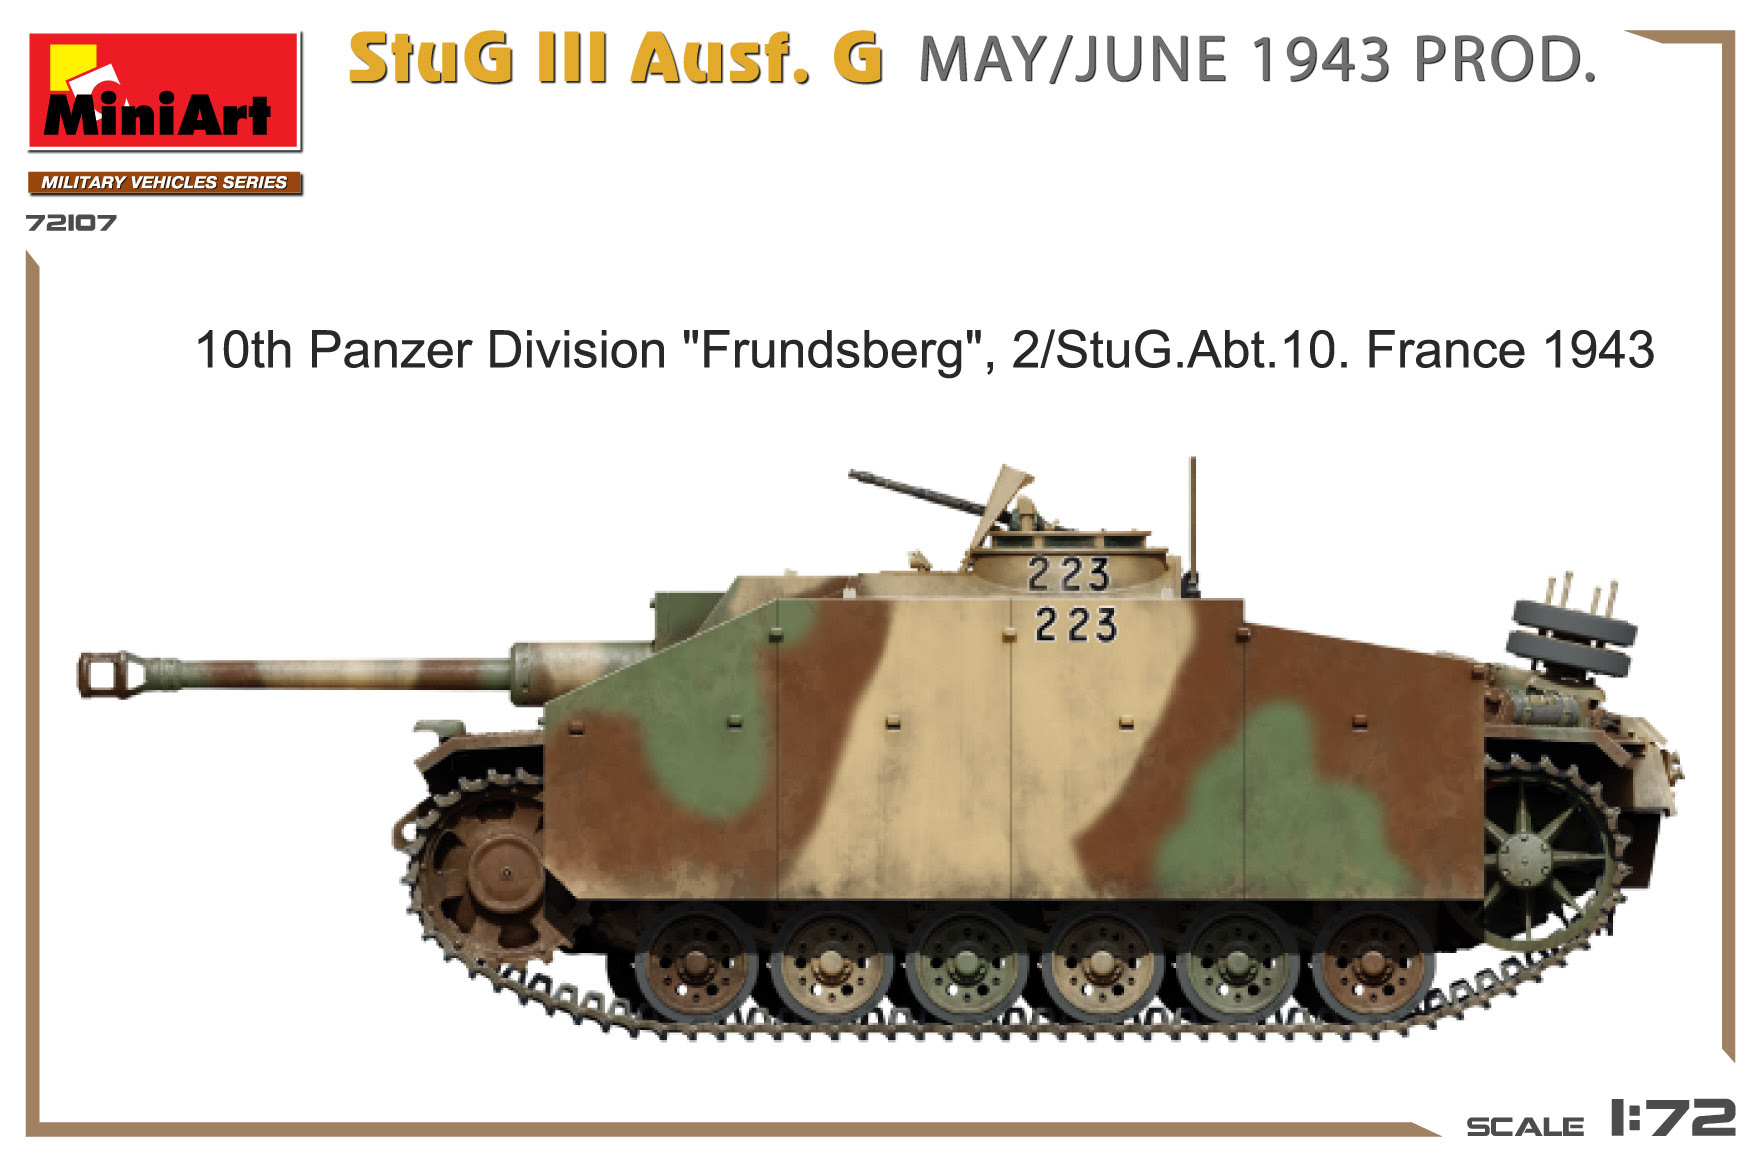 StuG III Ausf. G 